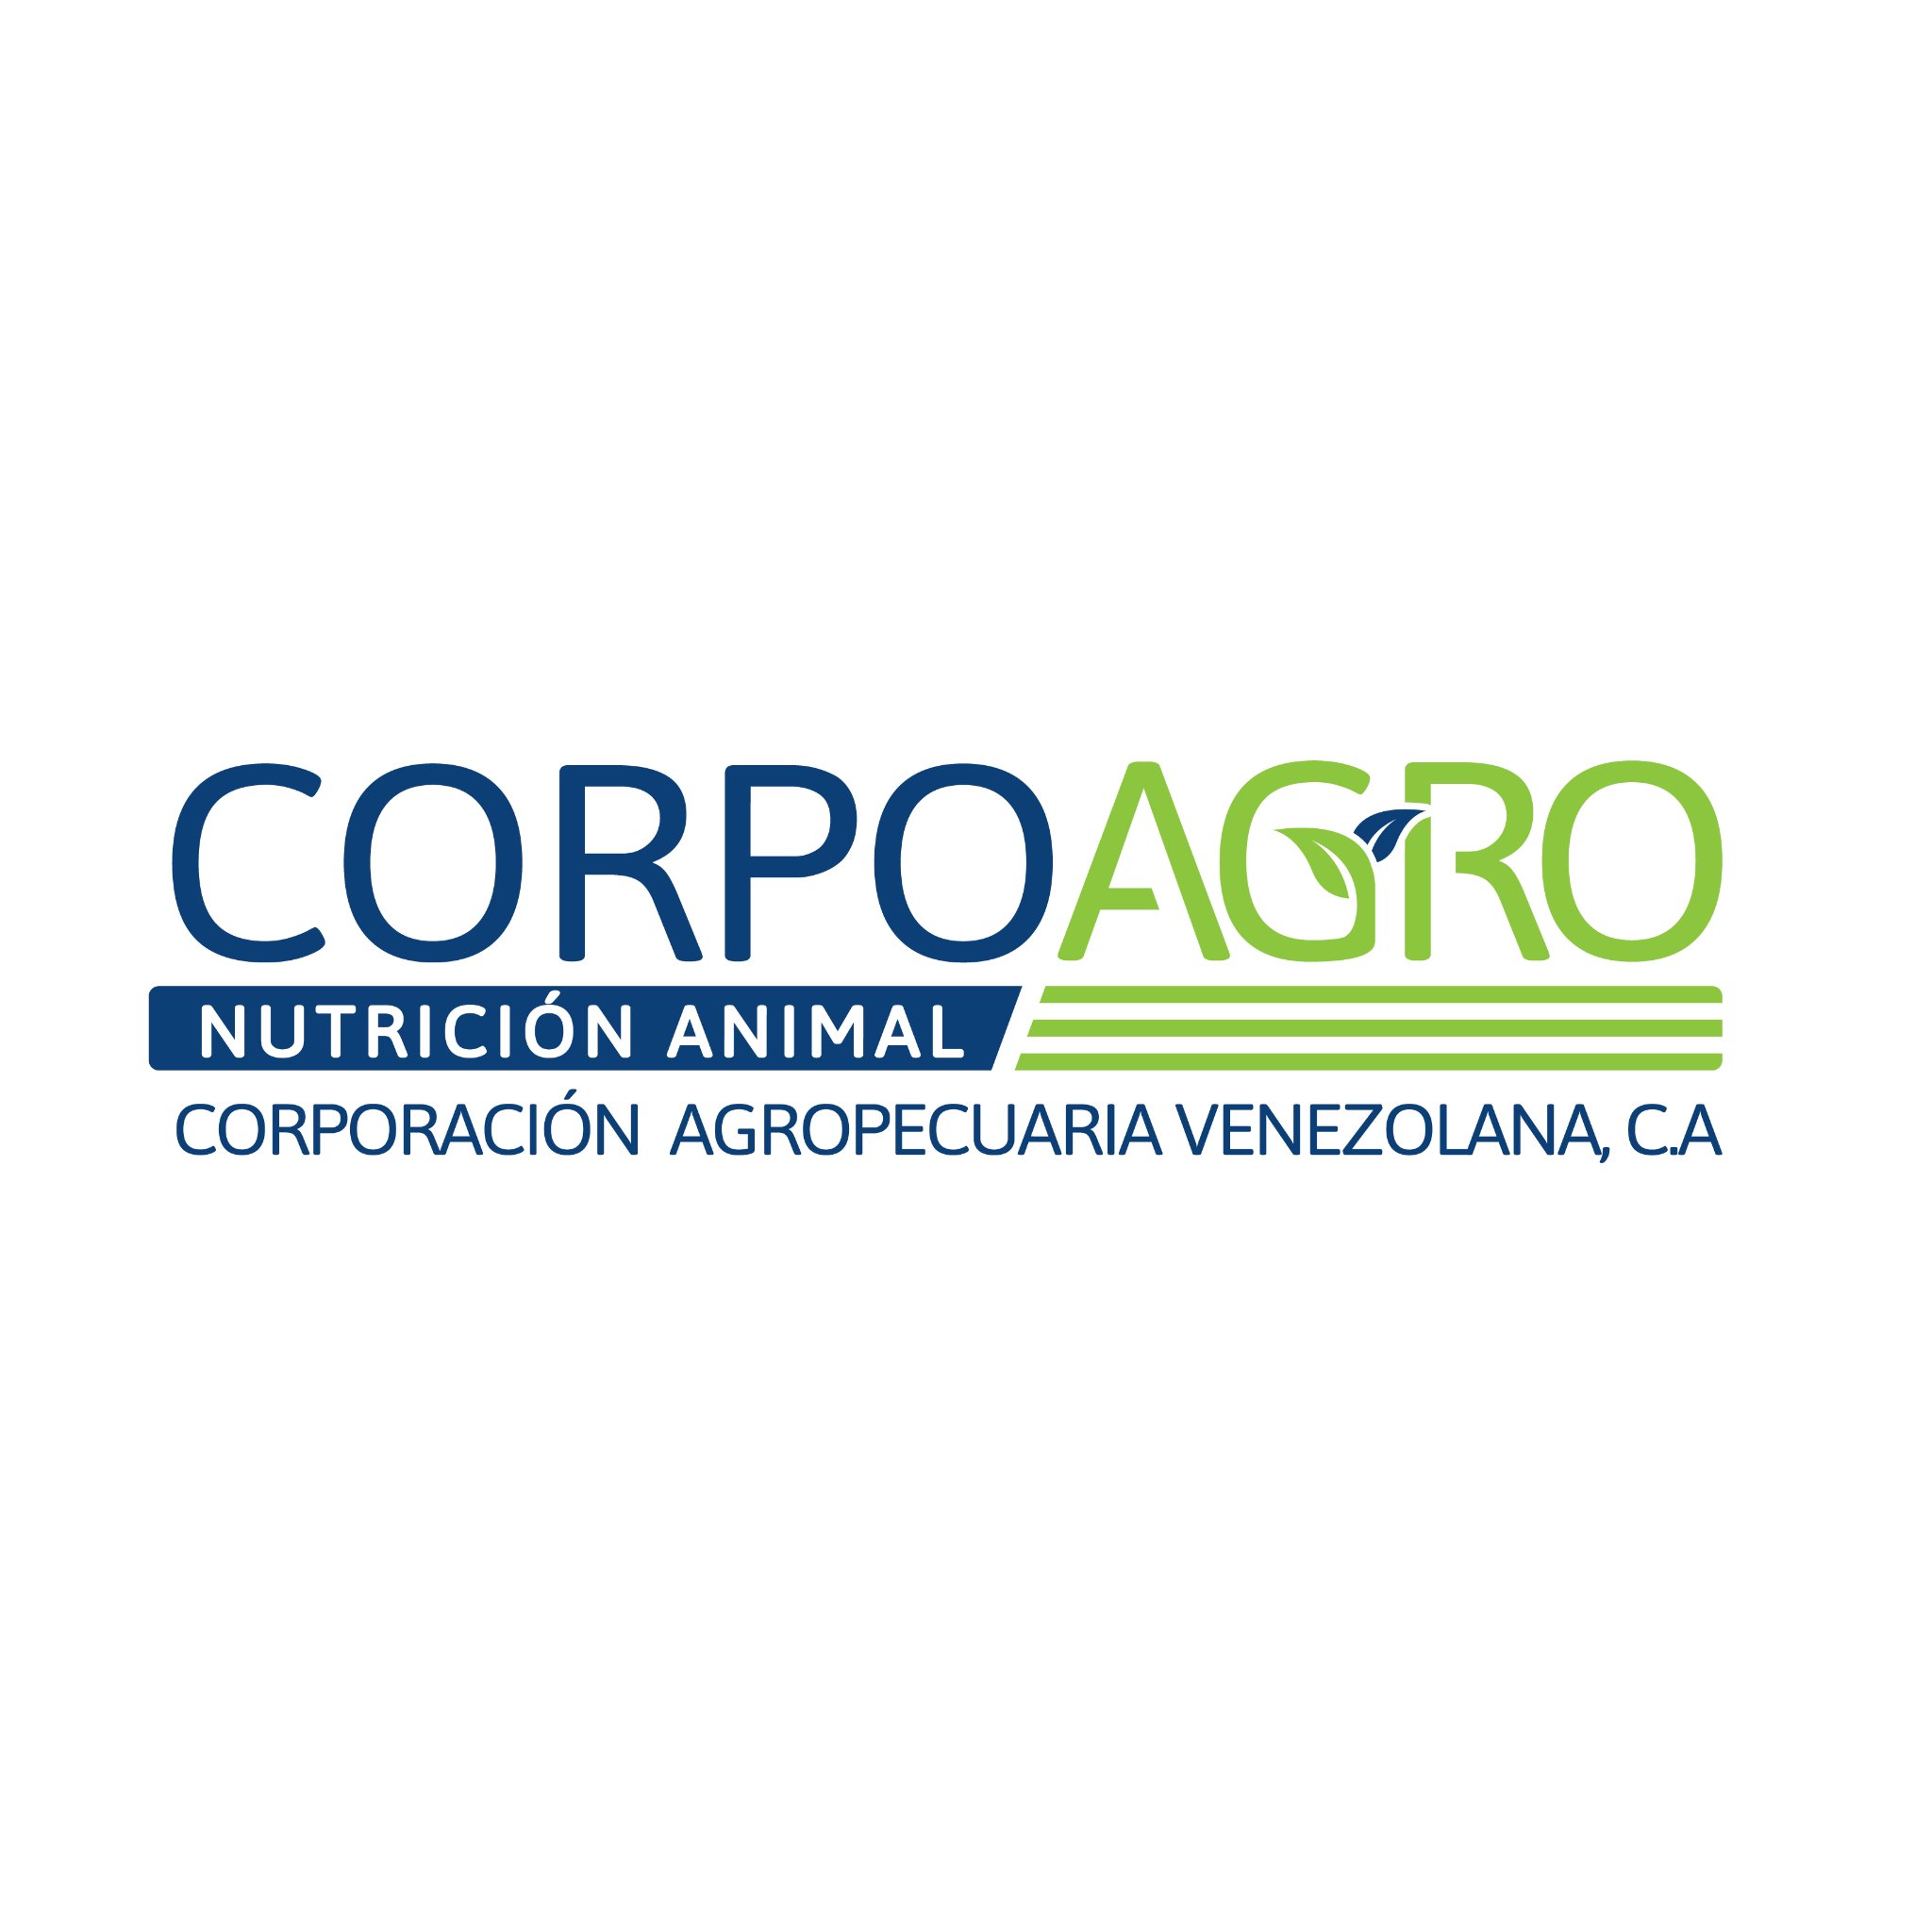 Corporacion Agropecuaria Venezolana C.A

Fabrica de Alimentos Balanceados para Animales

+58-251-2691969